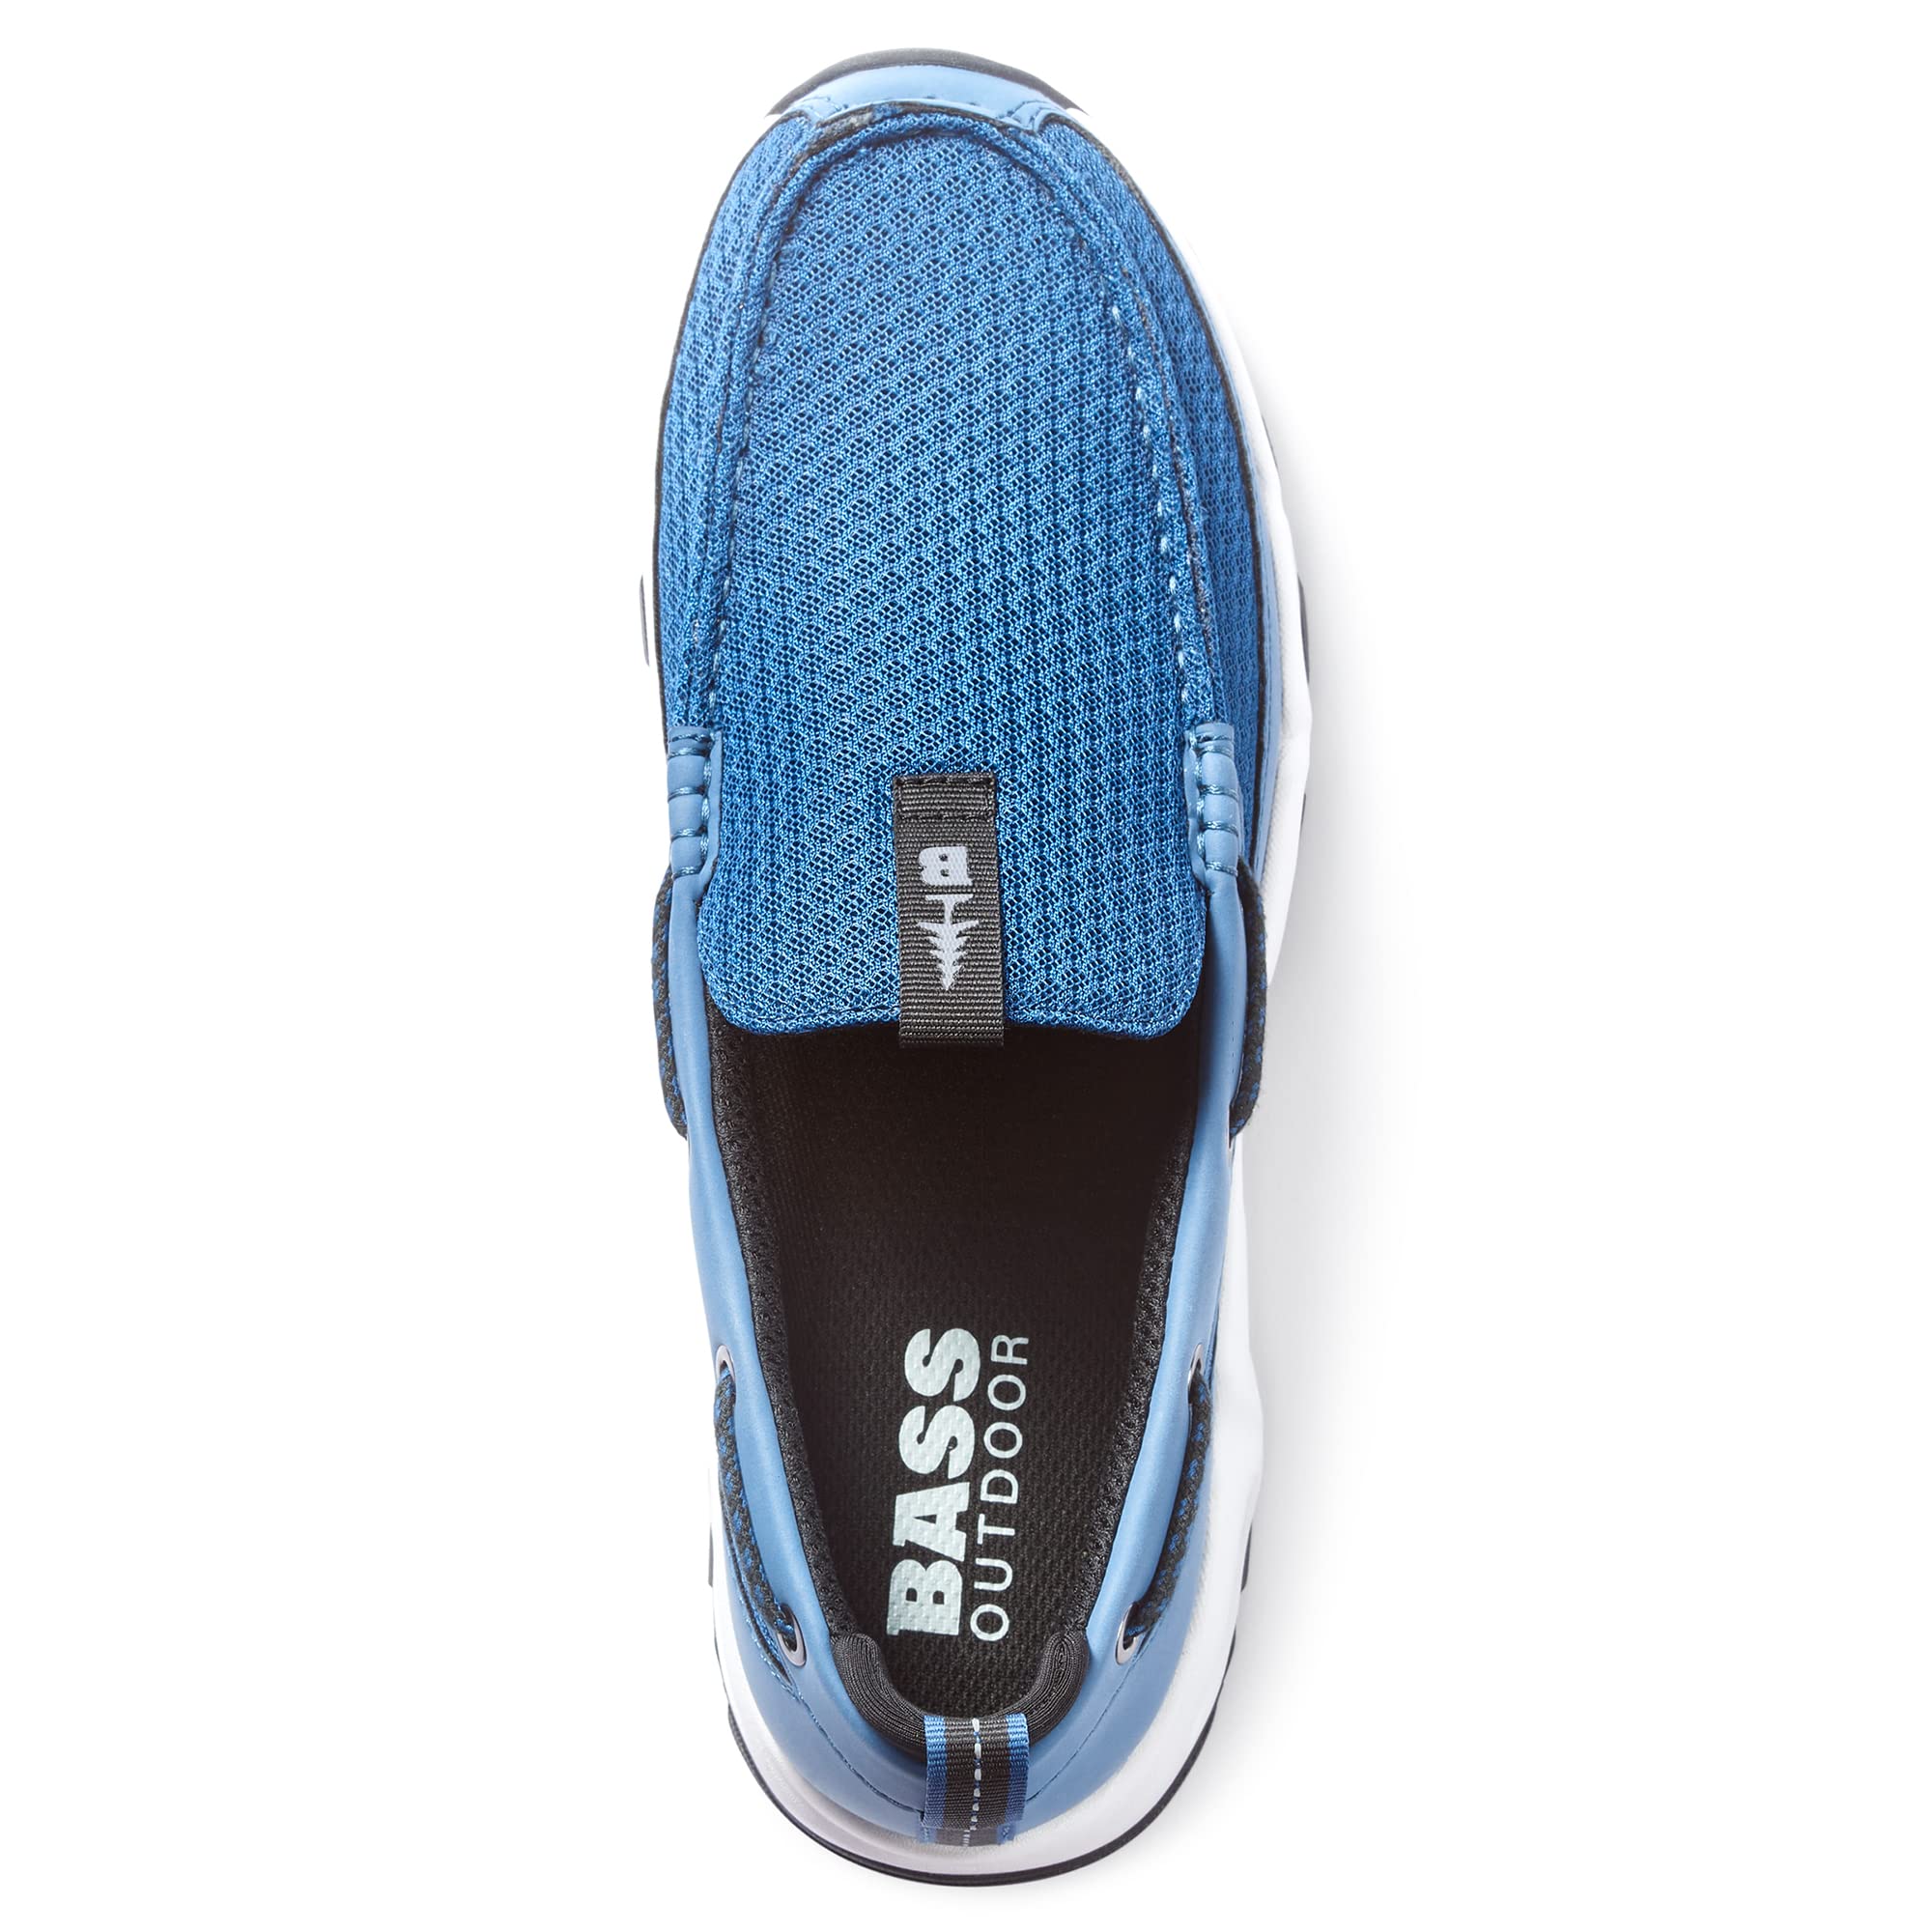 BASS OUTDOOR Men's Water Resistant Aqua Deck Shoe